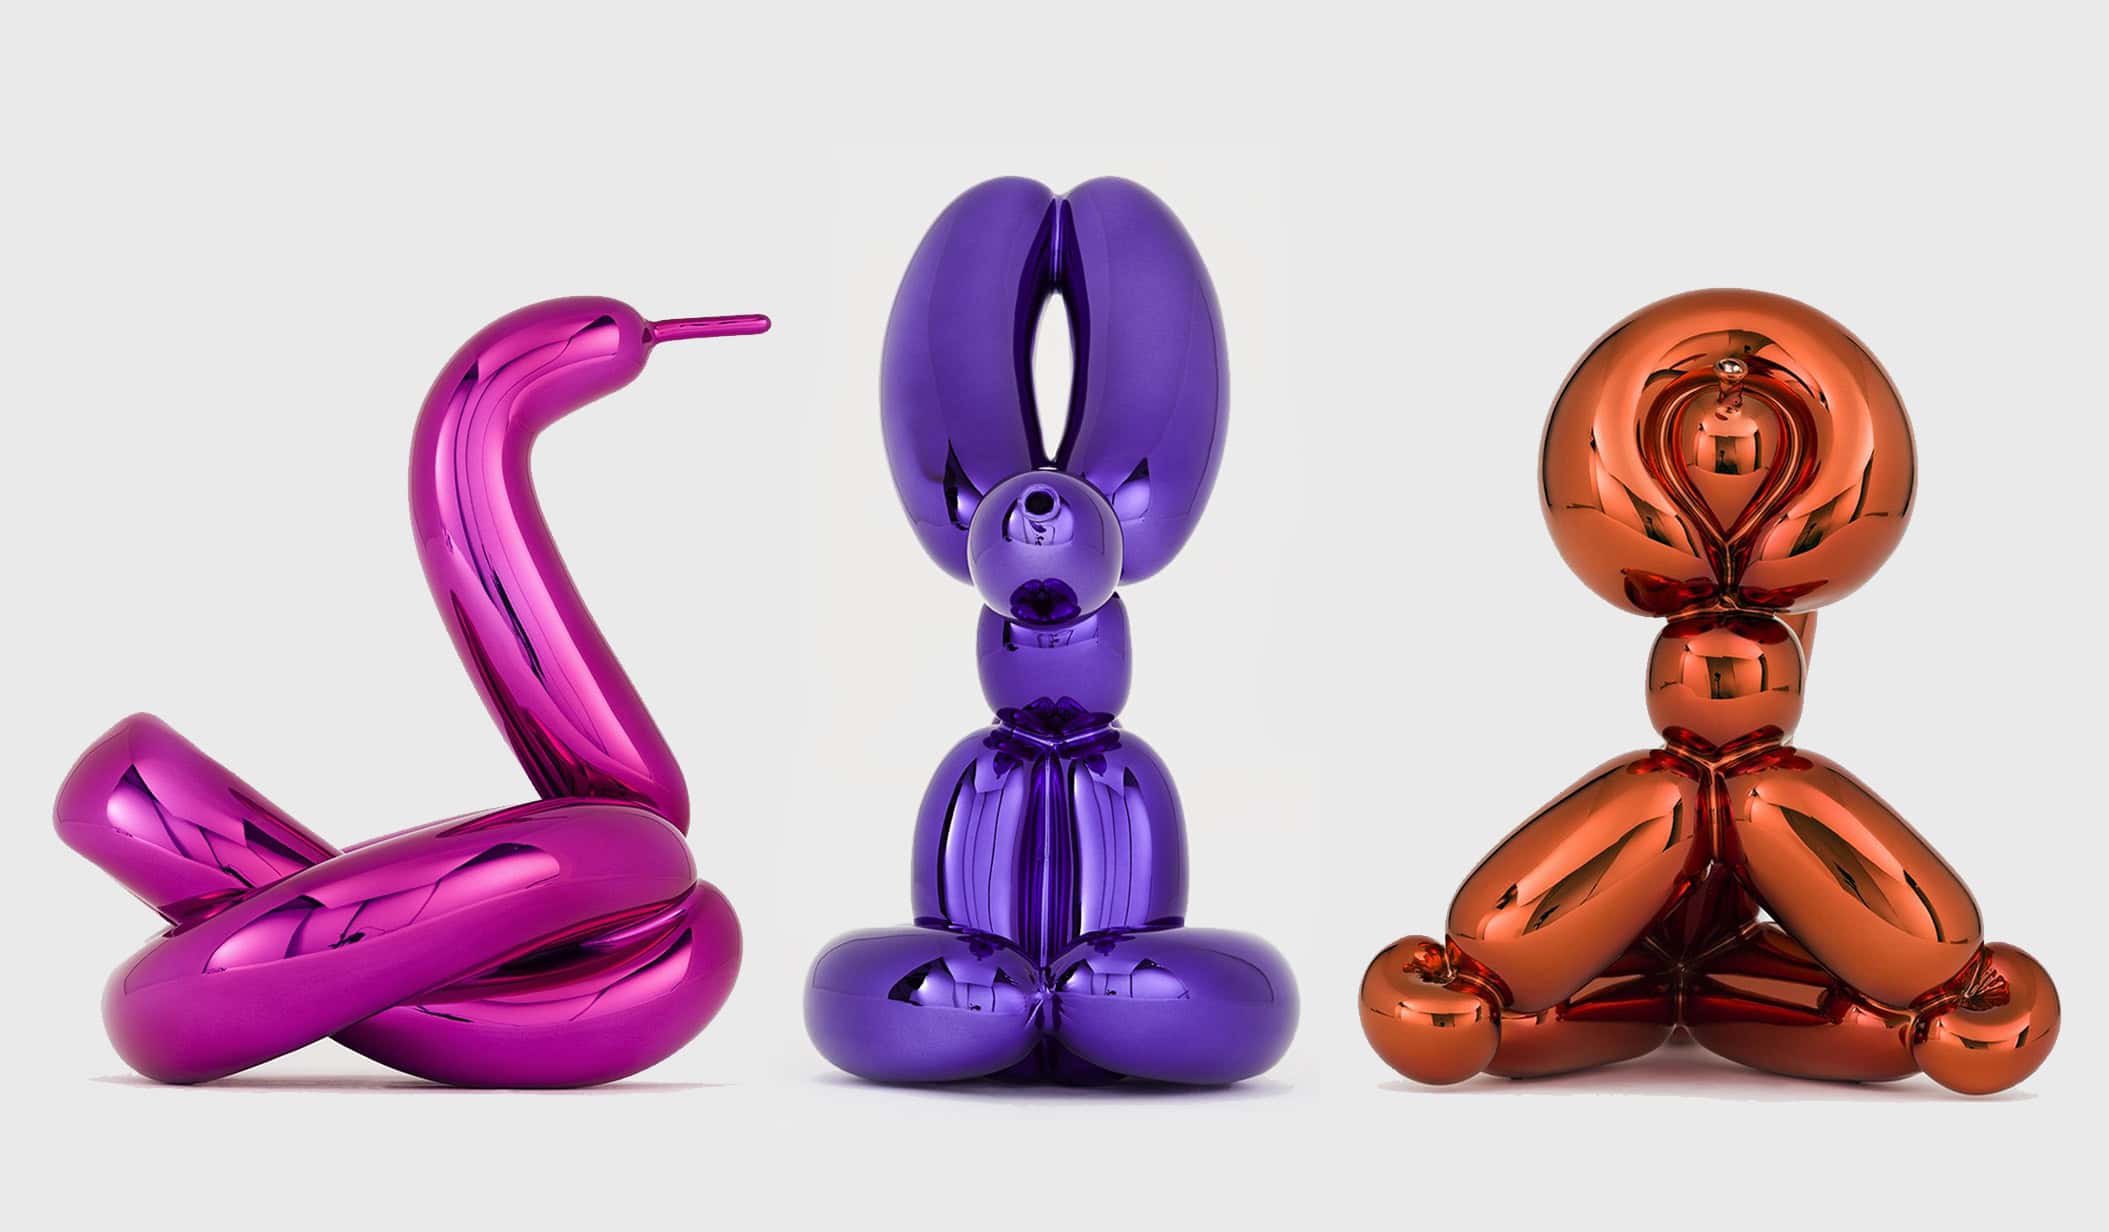 Jeff Koons Balloon Swan, Rabbit, and Monkey, 2019 (image 1)